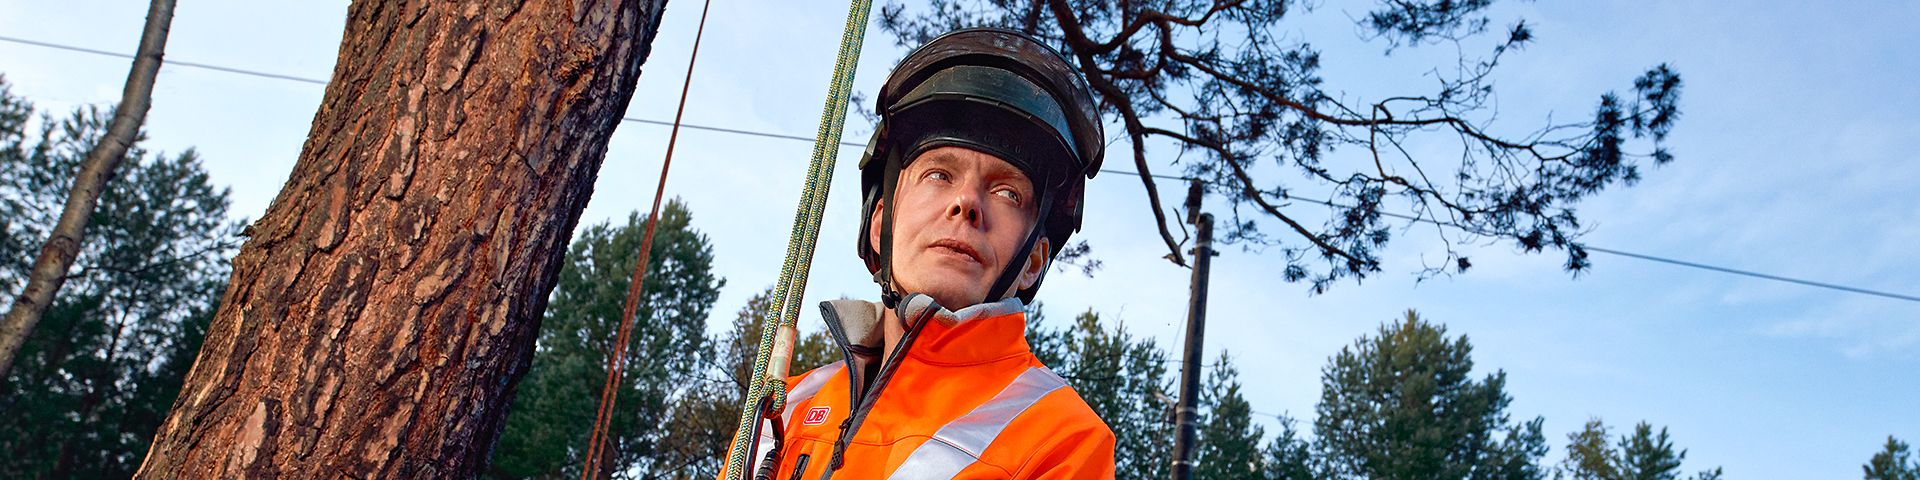 Eine Fahrwegpflegerin in Warnkleidung und mit Schutzhelm steht an der Strecke neben einem Baum